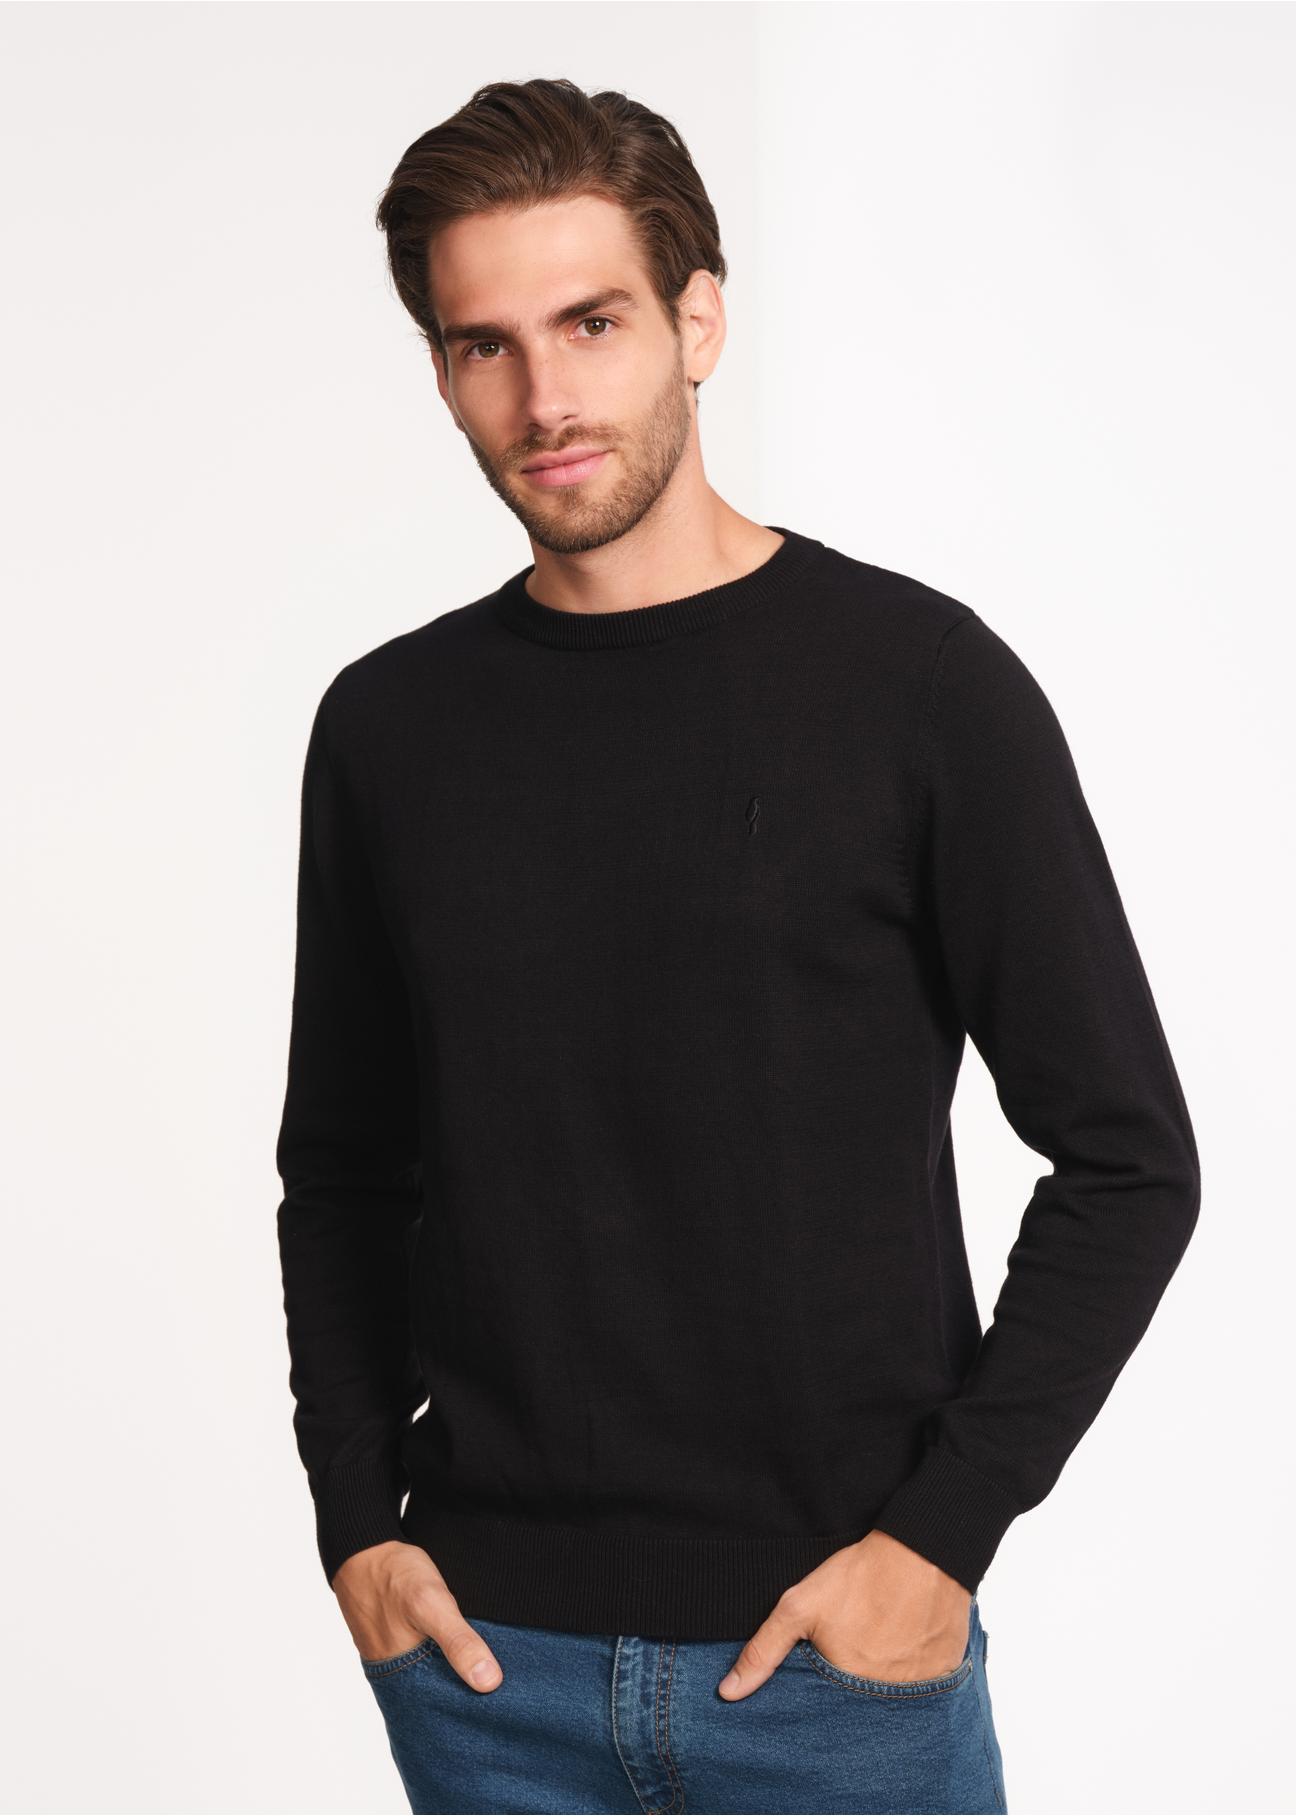 Czarny sweter męski basic SWEMT-0114-99(Z23)